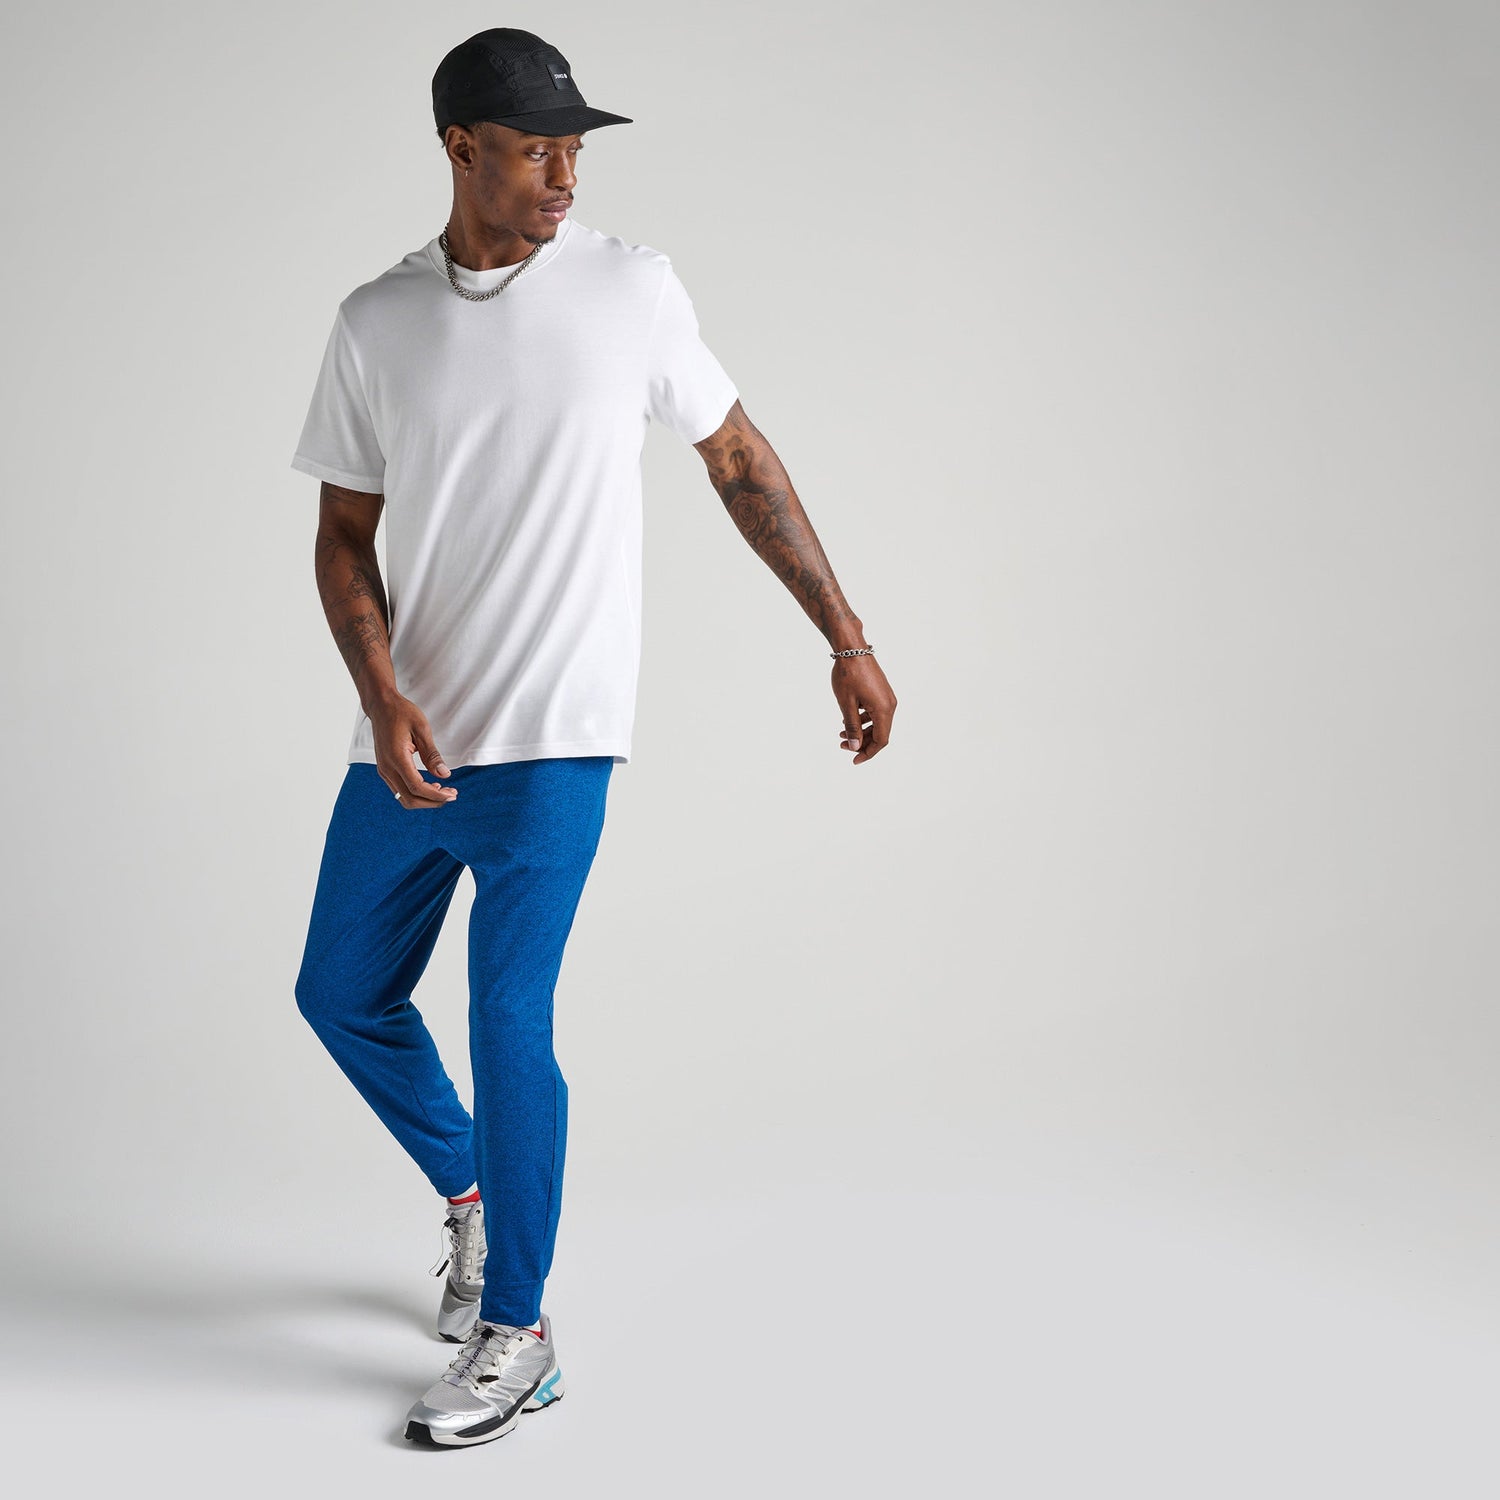 Pantalon de jogging bleu Primer de Stance | modèle